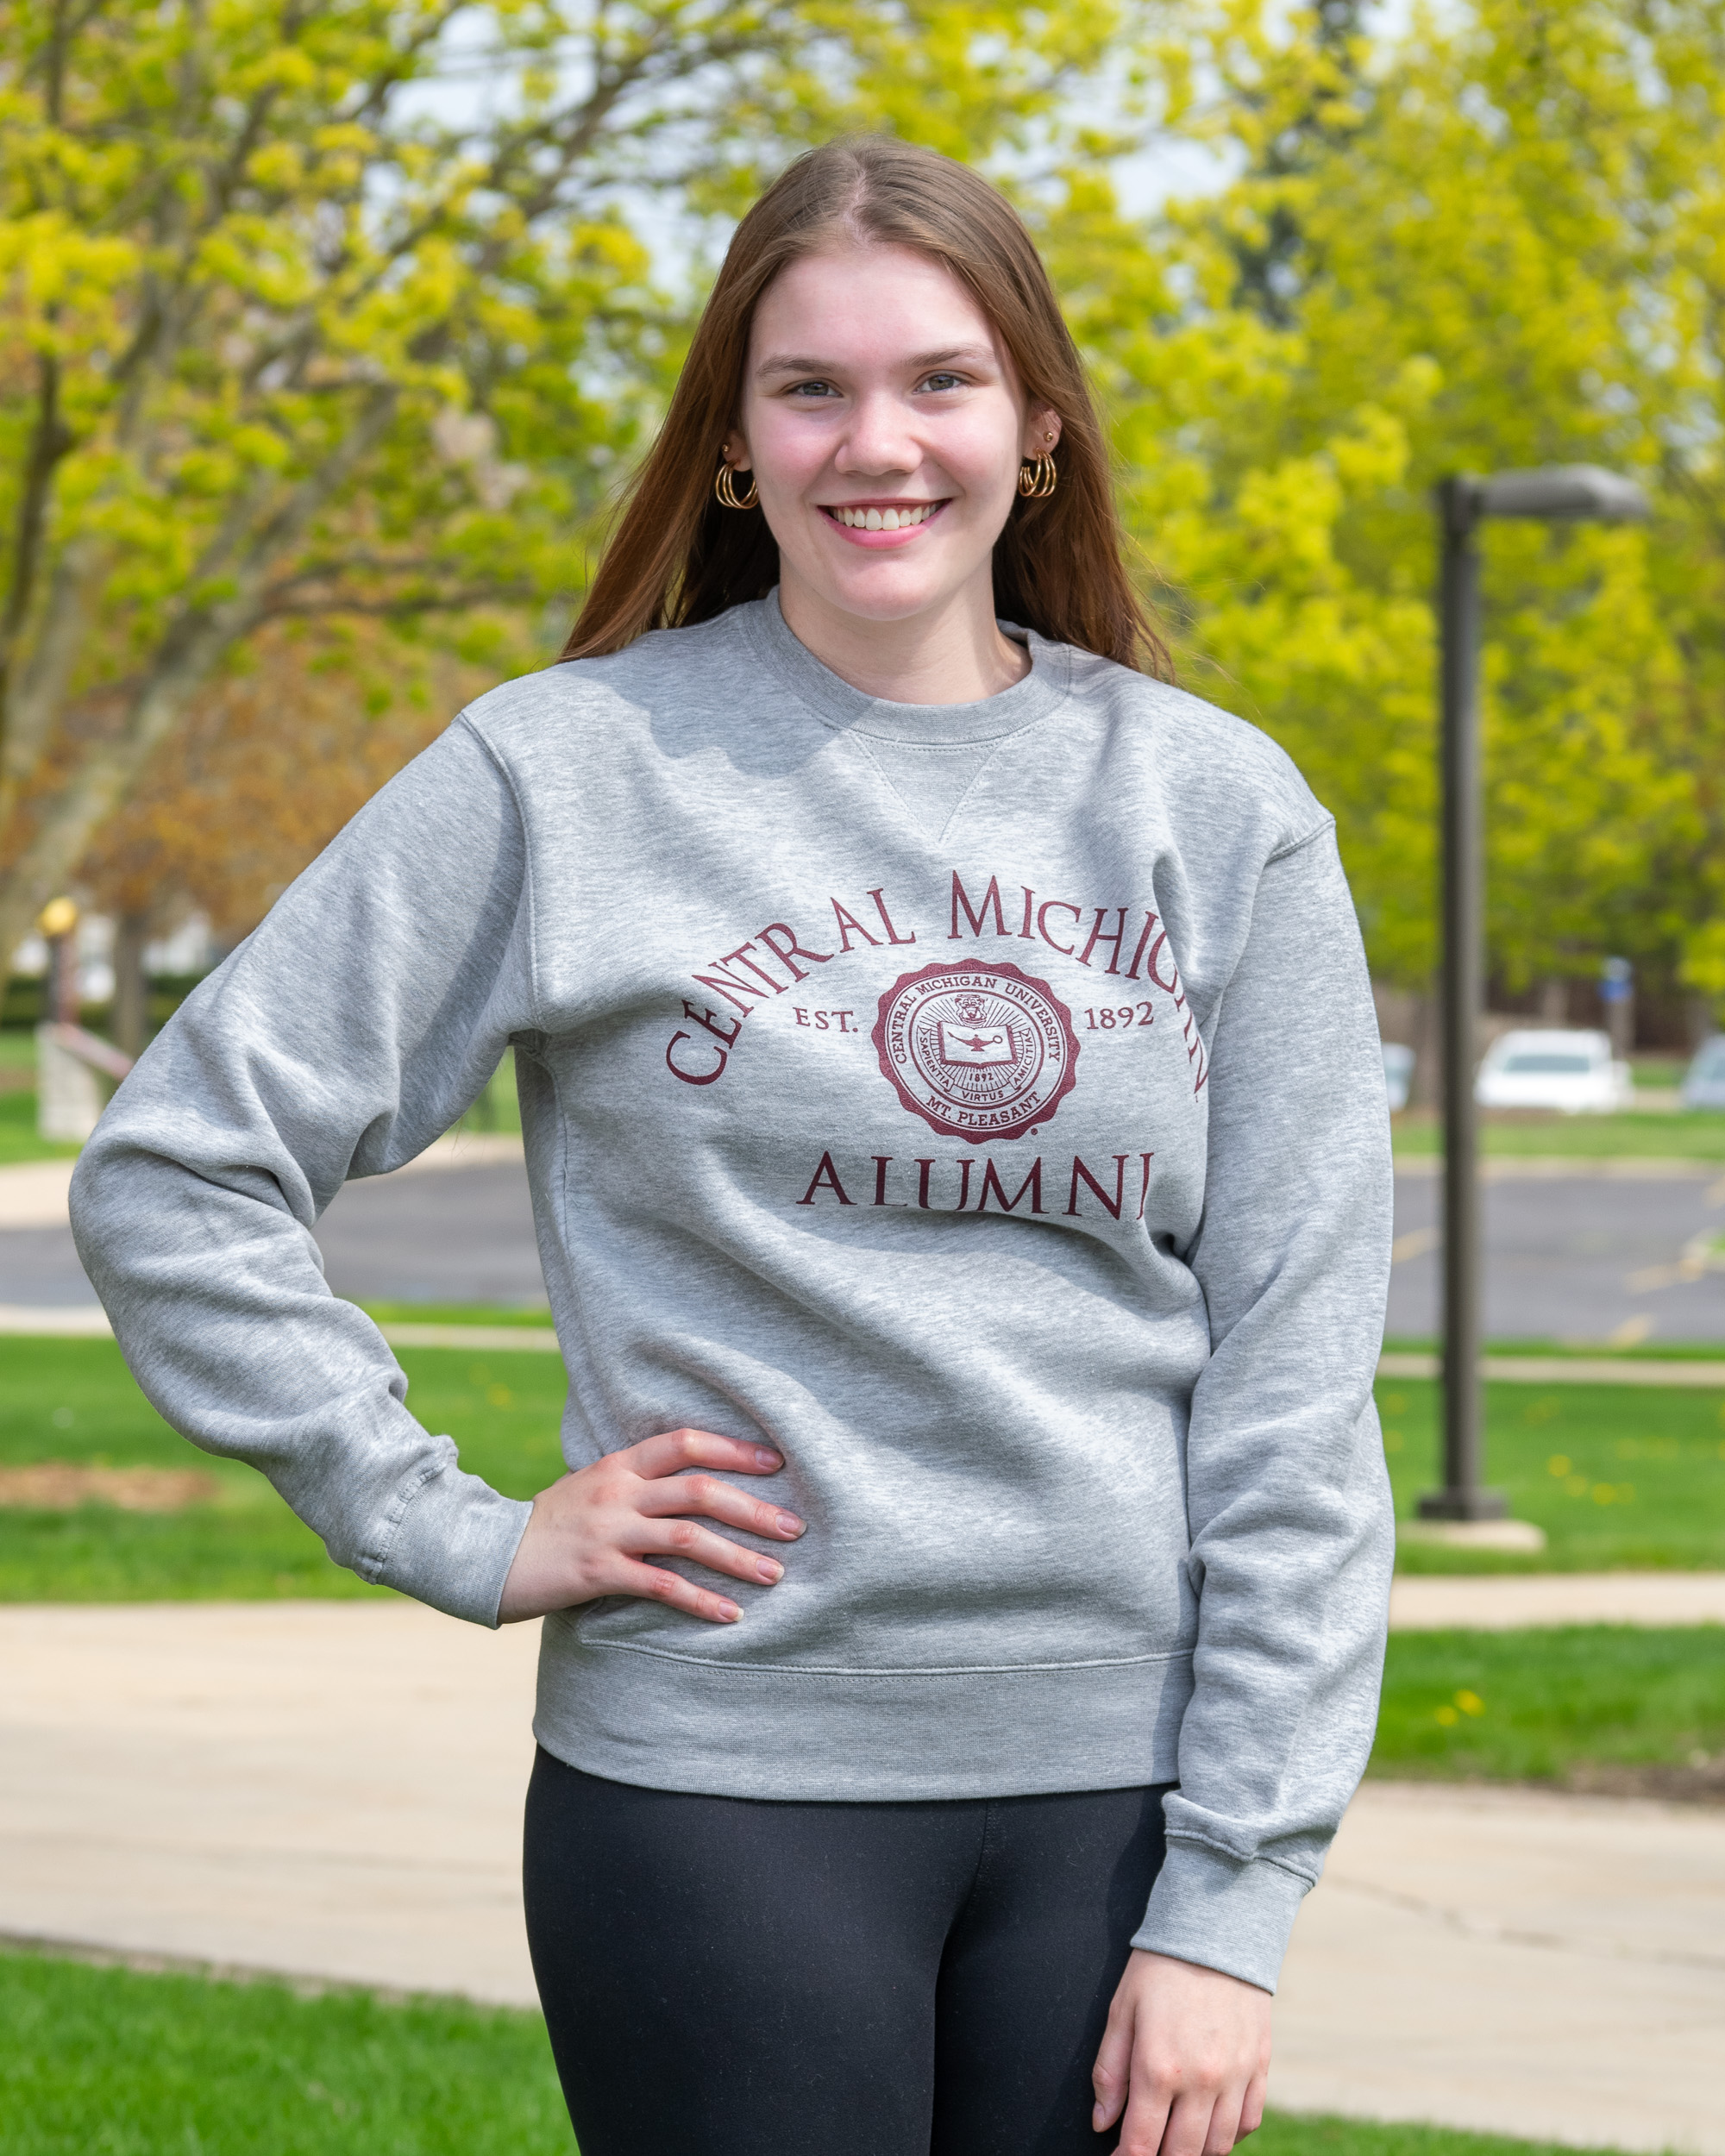 Central Michigan Alumni with Seal Oxford Gray Crewneck Sweatshirt (SKU 5058206898)